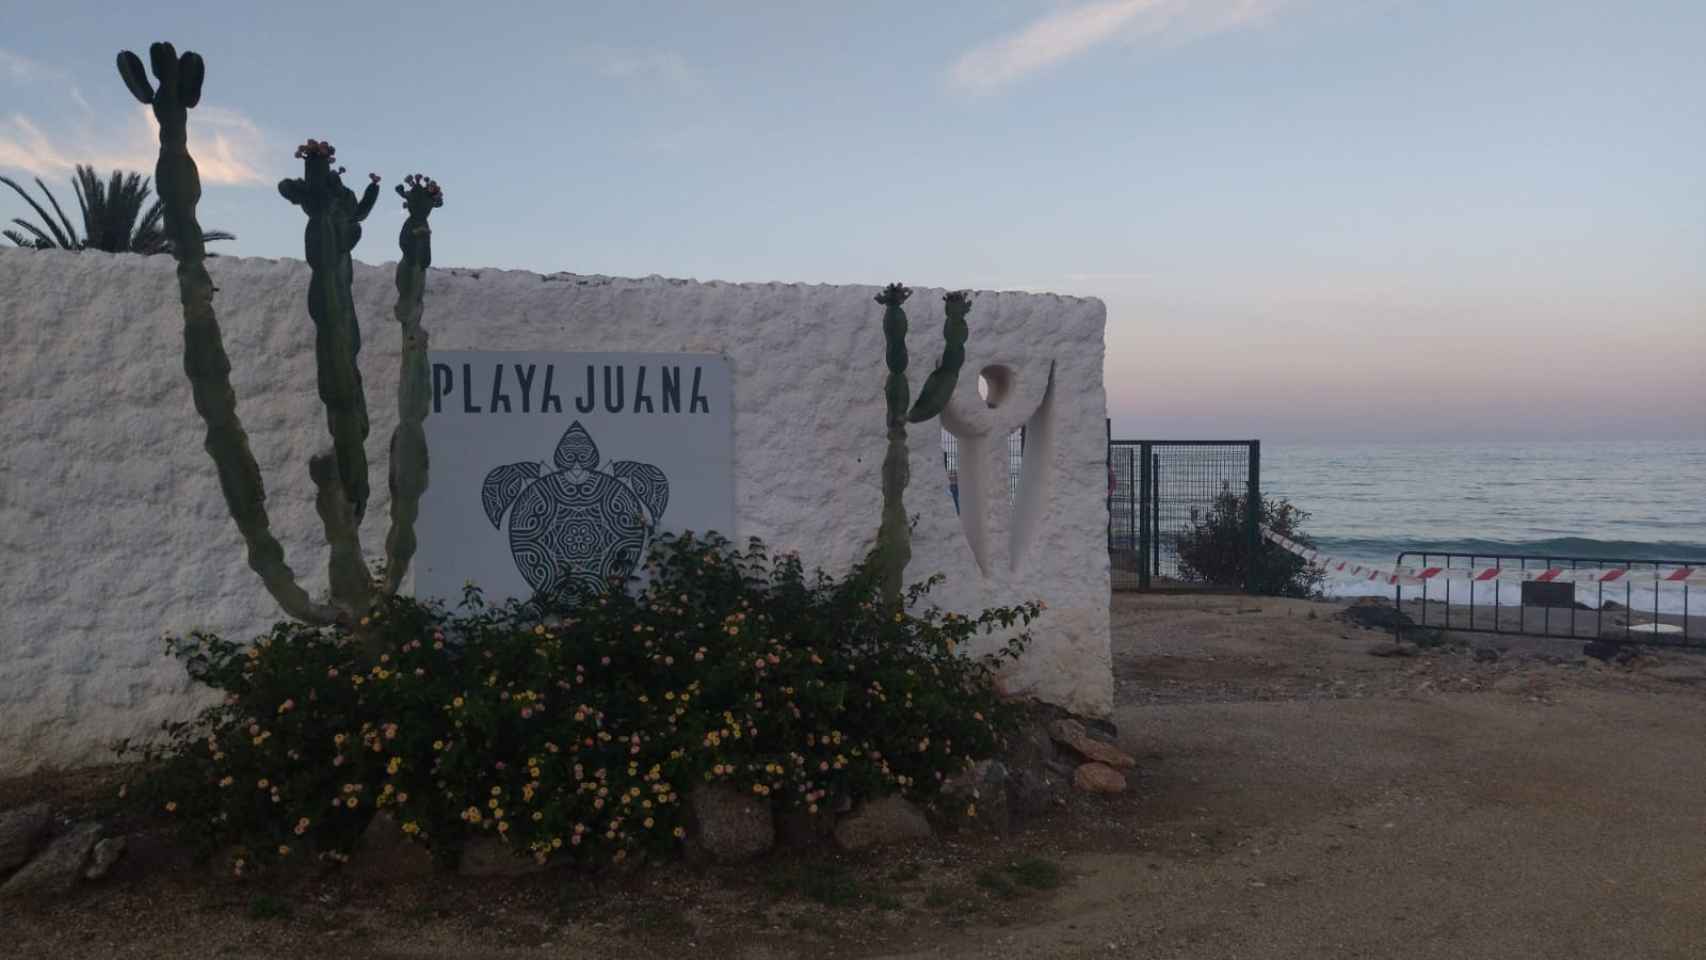 El Playa Juana Beach, cerrado por tener varios expedientes abiertos, donde trabajaba Vicente, nieto de Juana y uno de los detenidos.